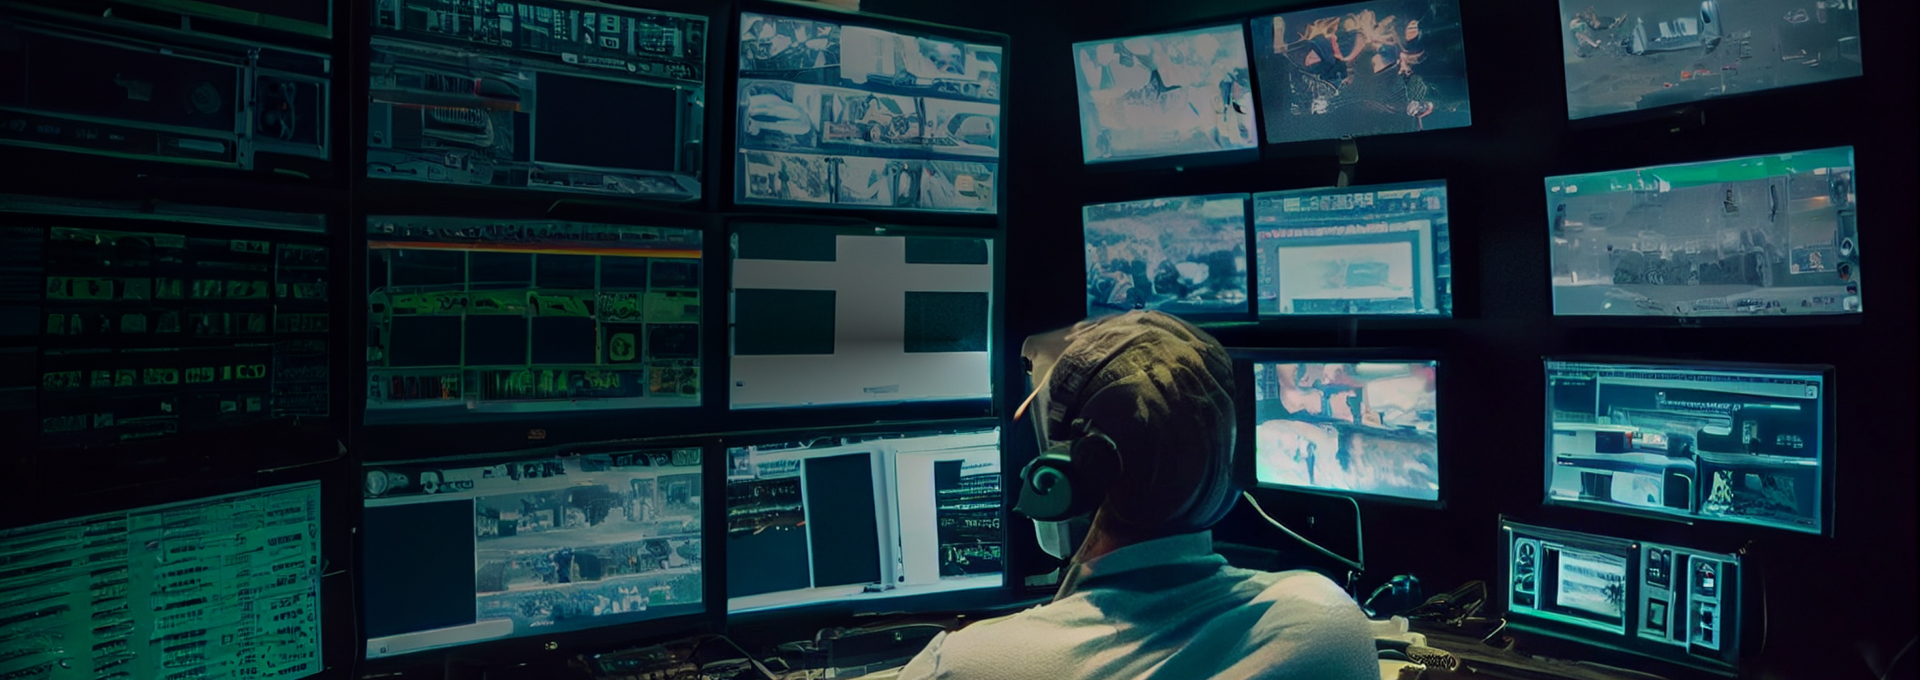 一名男子正在中央控制室觀看影像監控螢幕